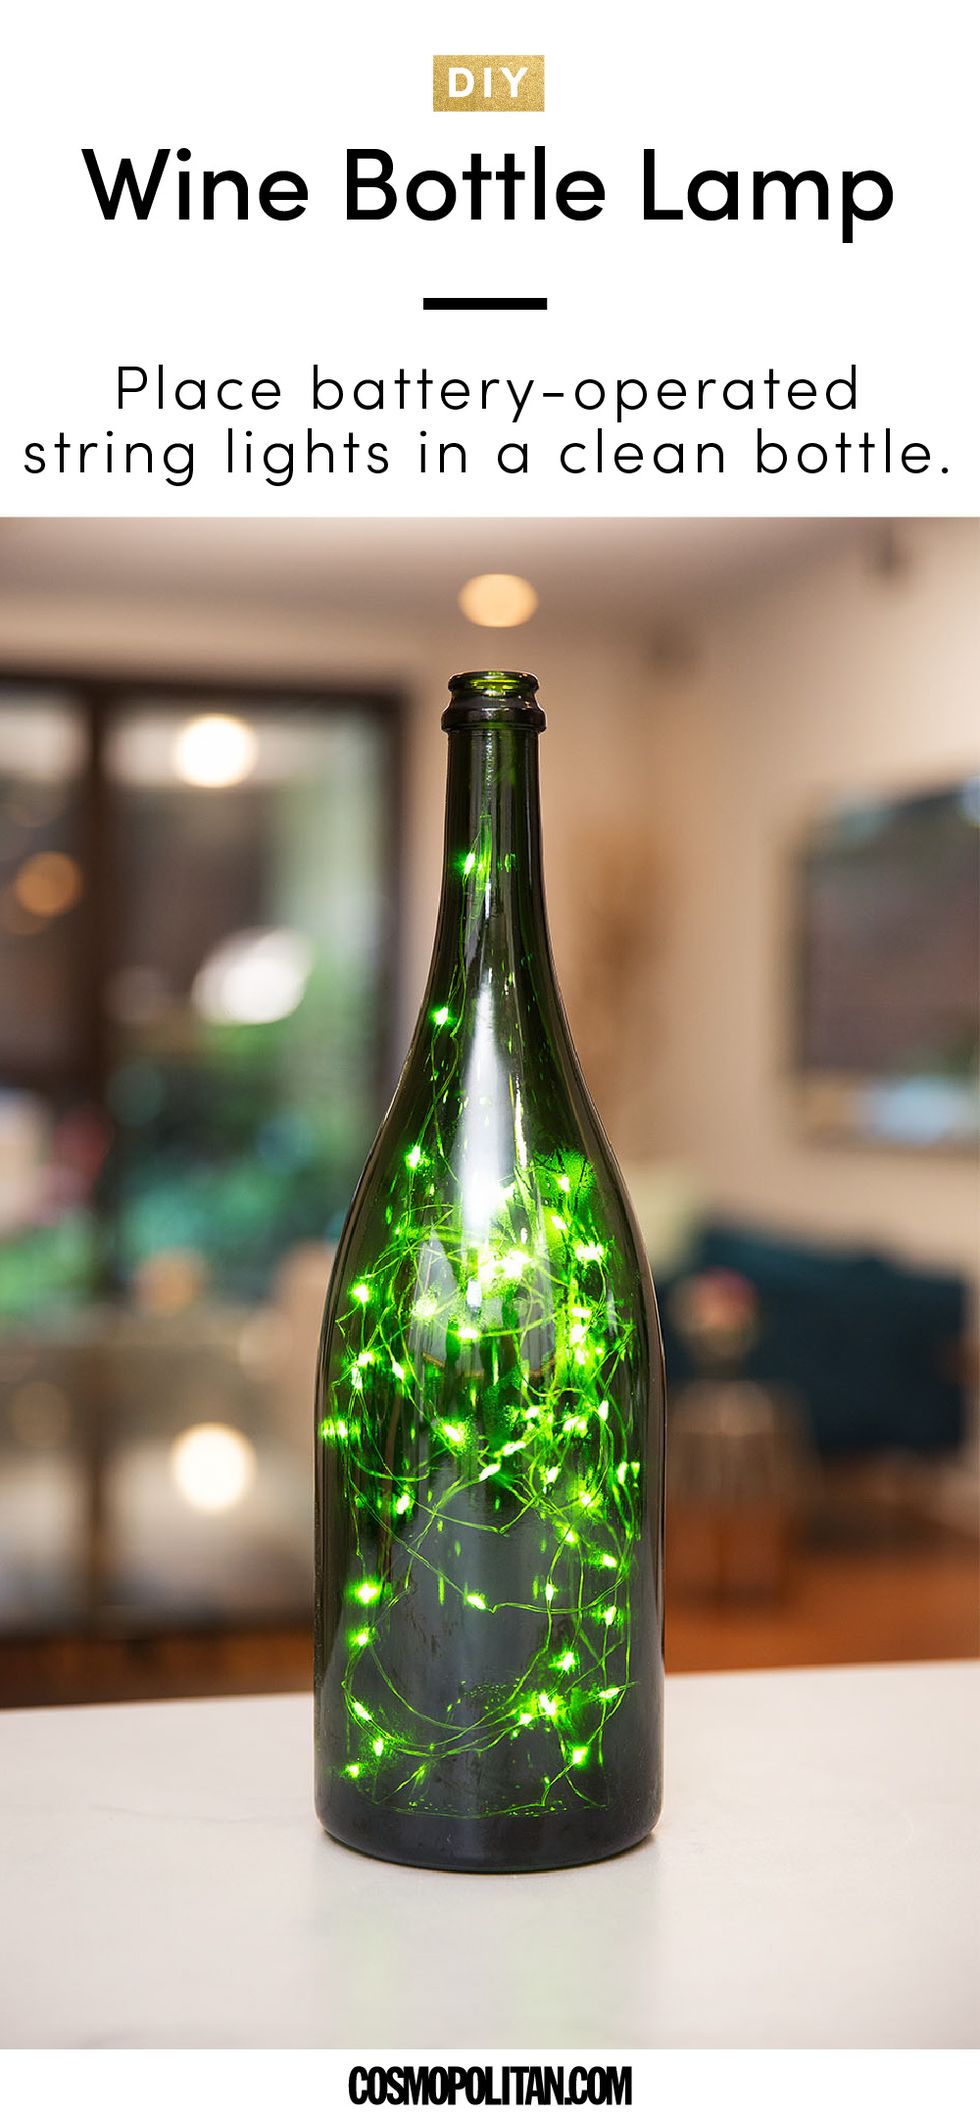 Bottle, Glass bottle, Wine bottle, Glass, Green, Light, Drinkware, Lighting, Beer bottle, Lighting accessory, 